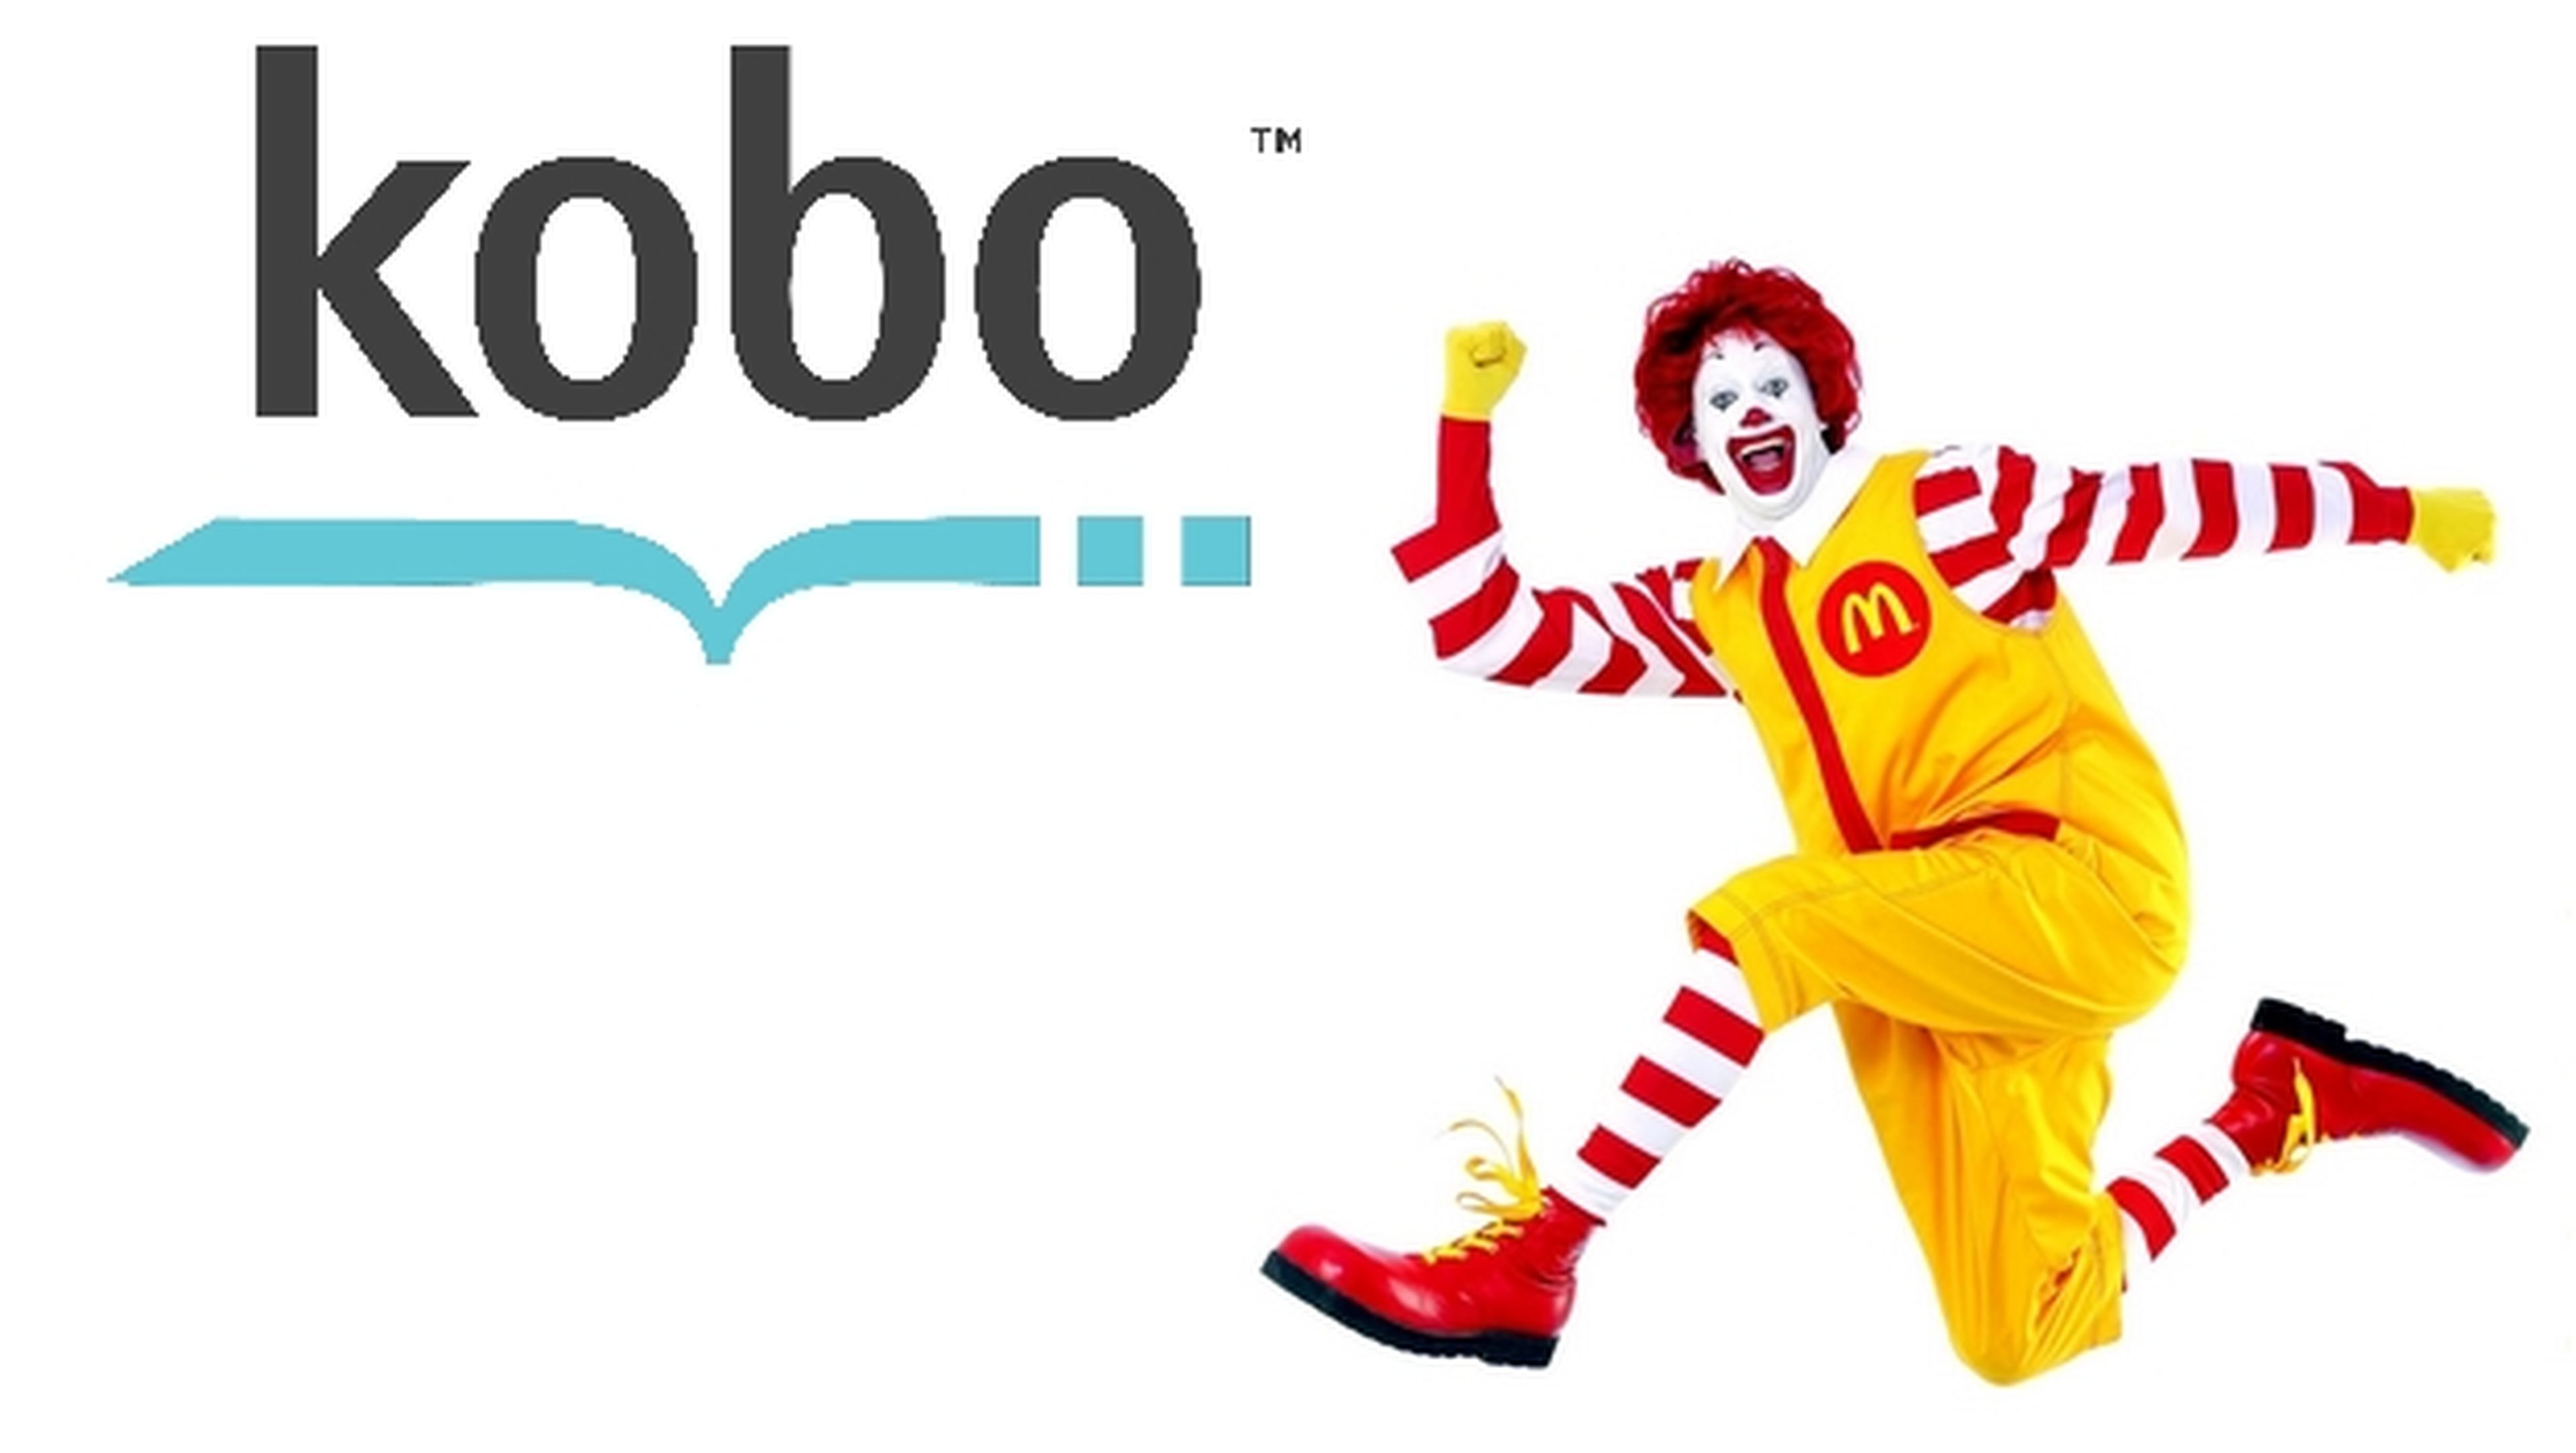 McDonald's regalará ebooks infantiles gratis con cada Happy Meal